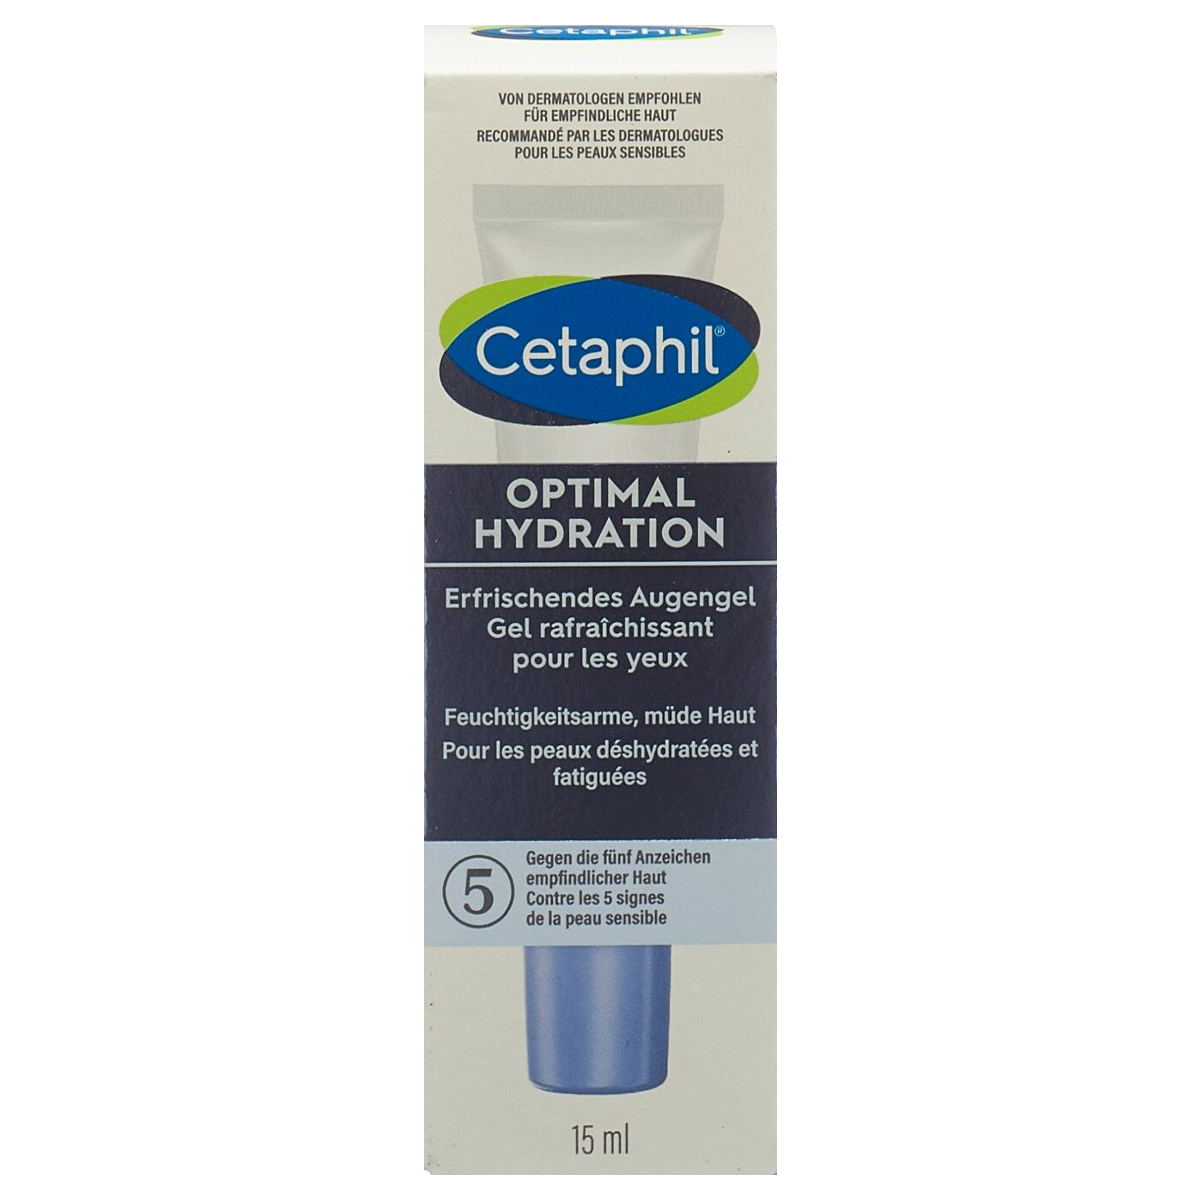 Cetaphil Optimal Hydration erfrischendes Augengel 15 ml